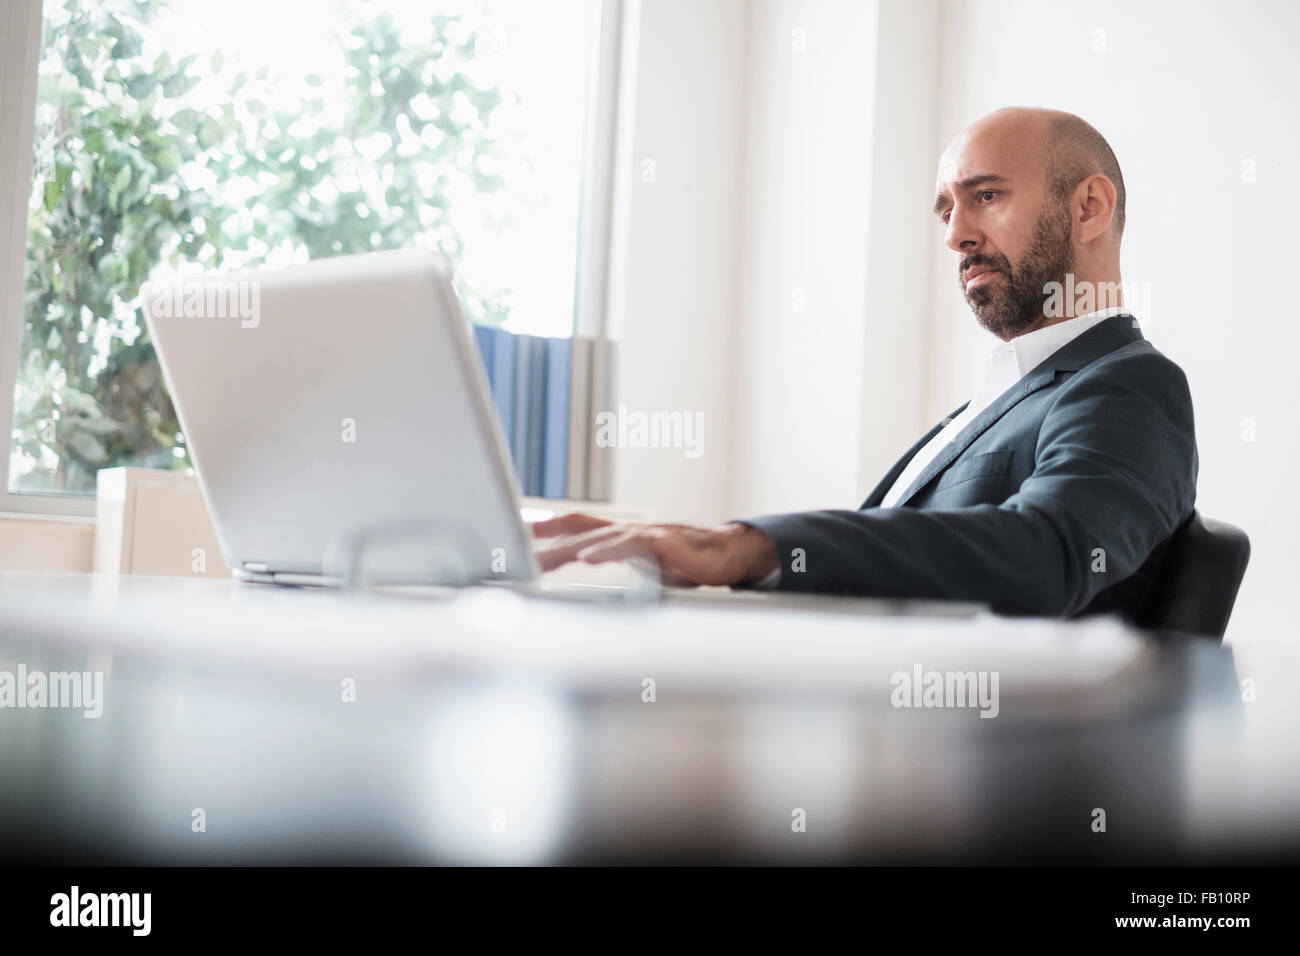 Businessman working concentré avec laptop at desk in office Banque D'Images